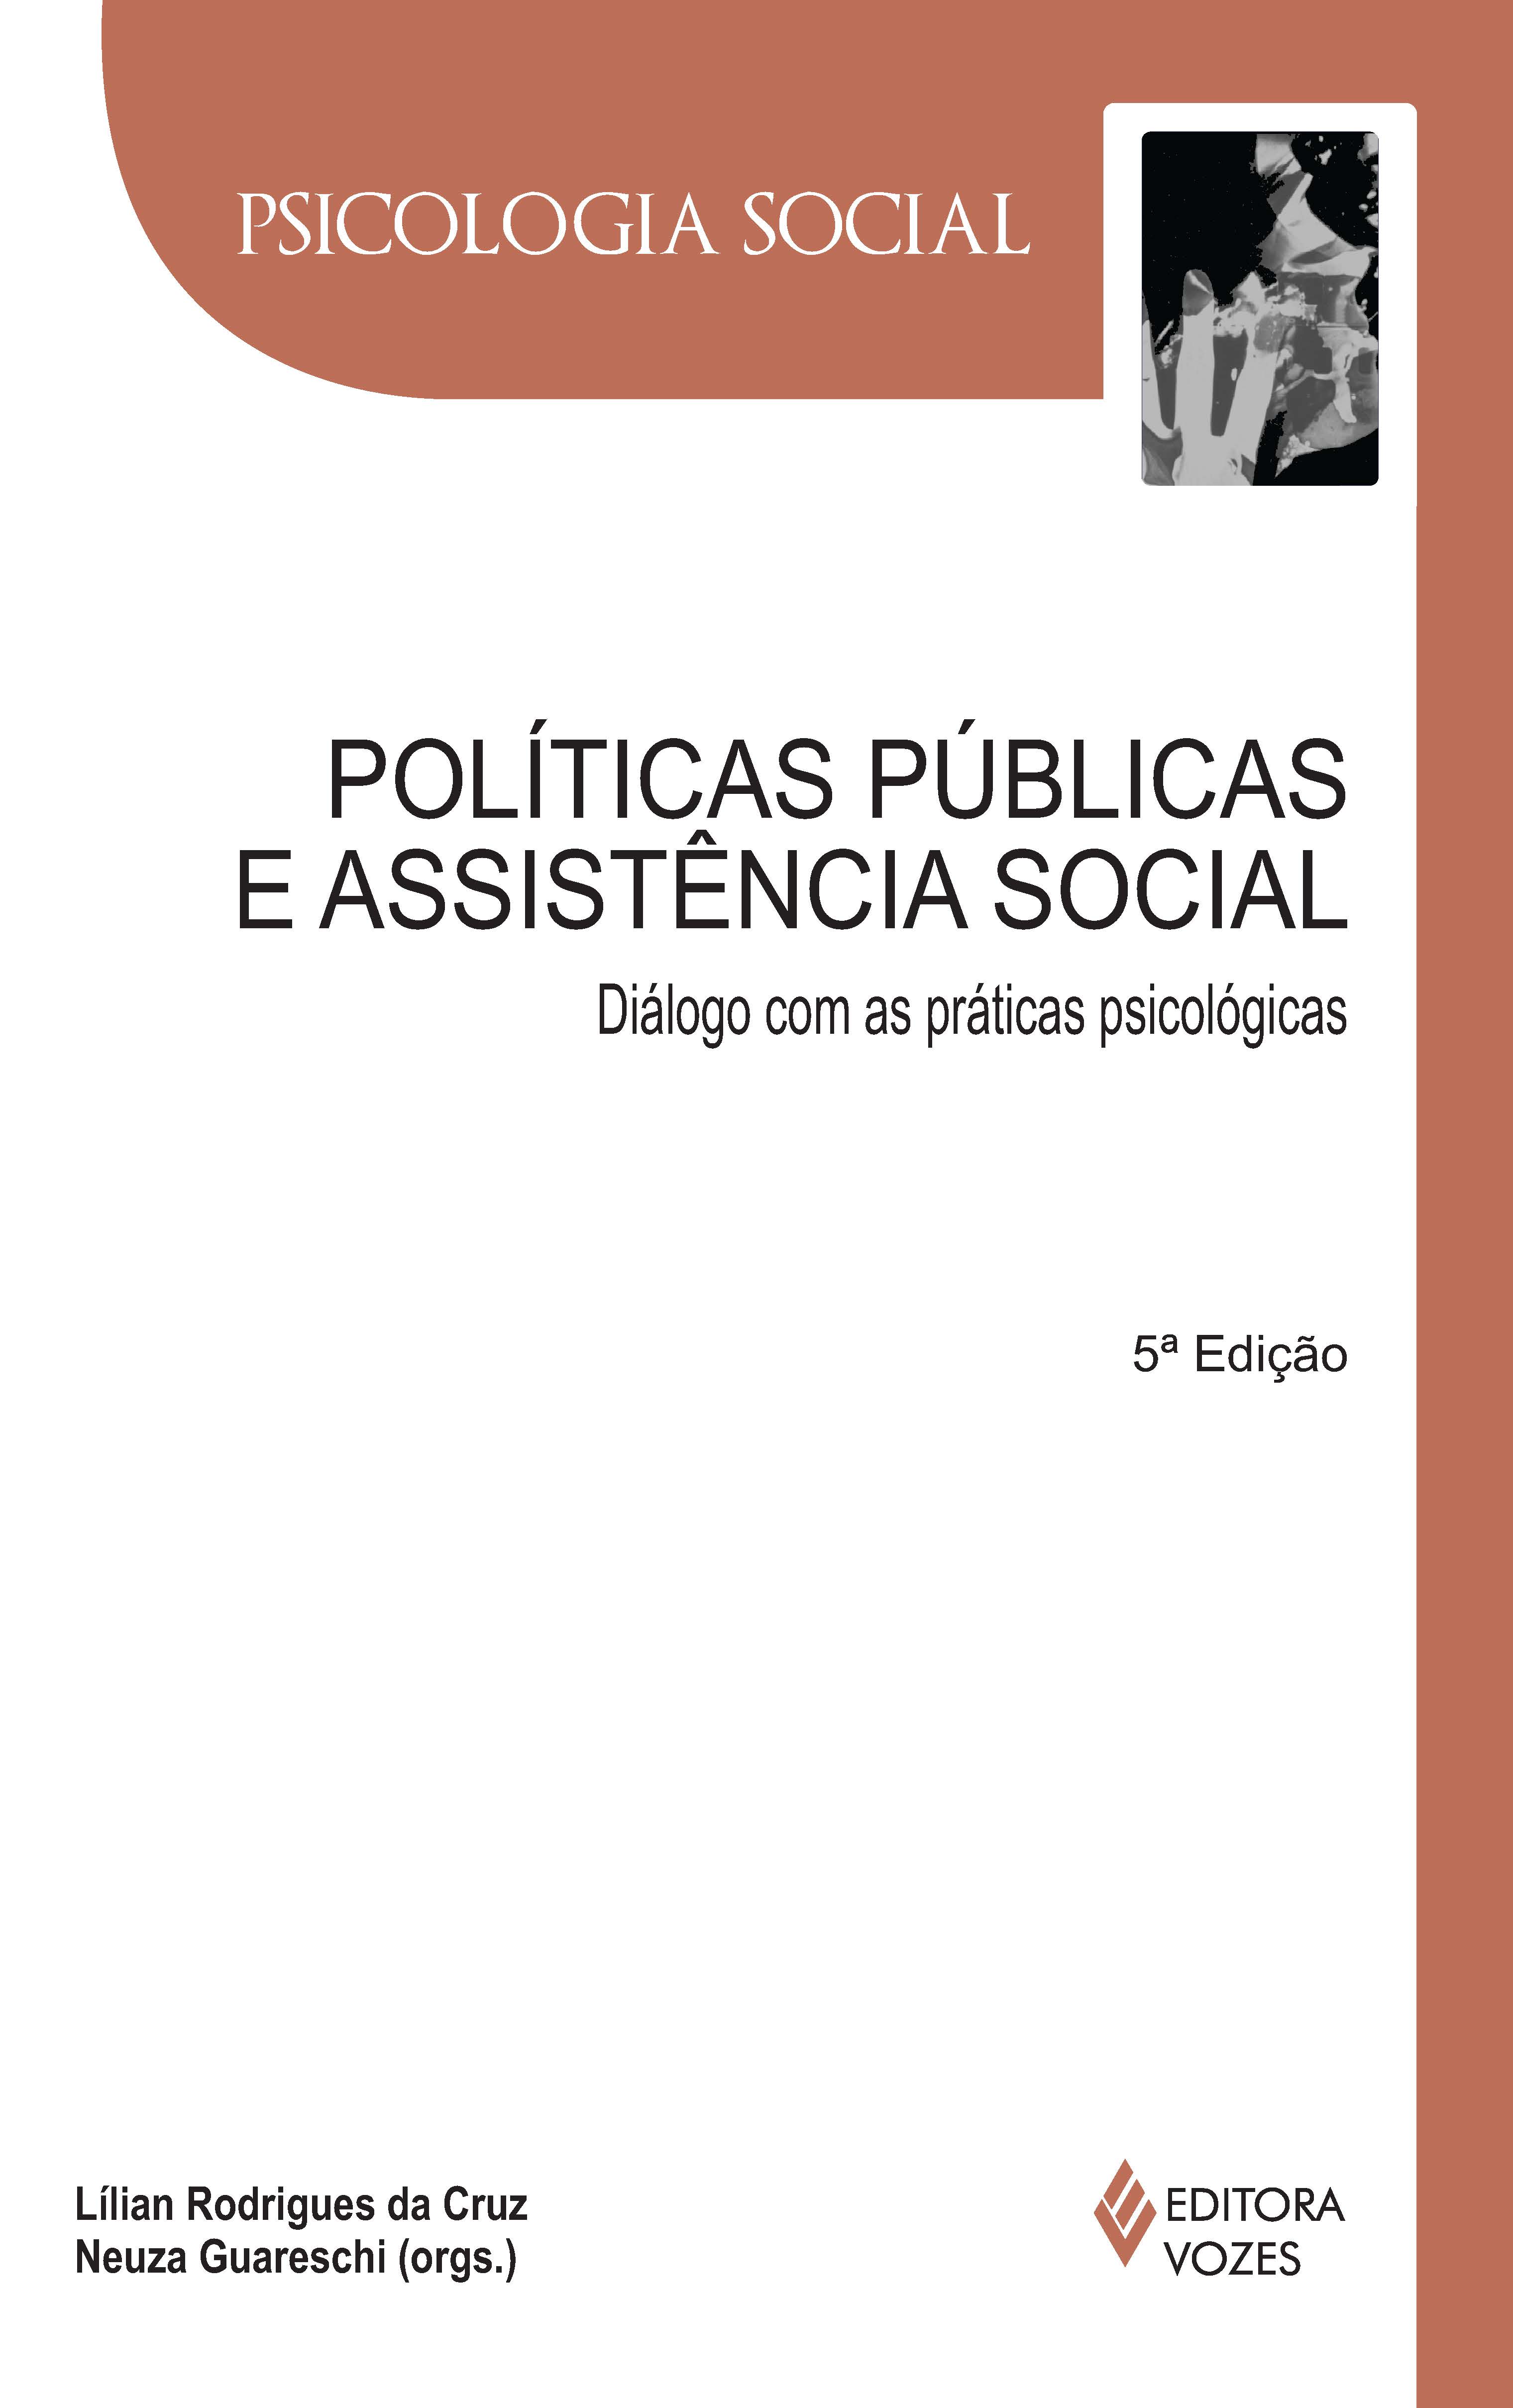 POLITICAS PUBLICAS E ASSISTENCIA SOCIAL: DIALOGO COM AS PRATICAS PSICOLOGIC